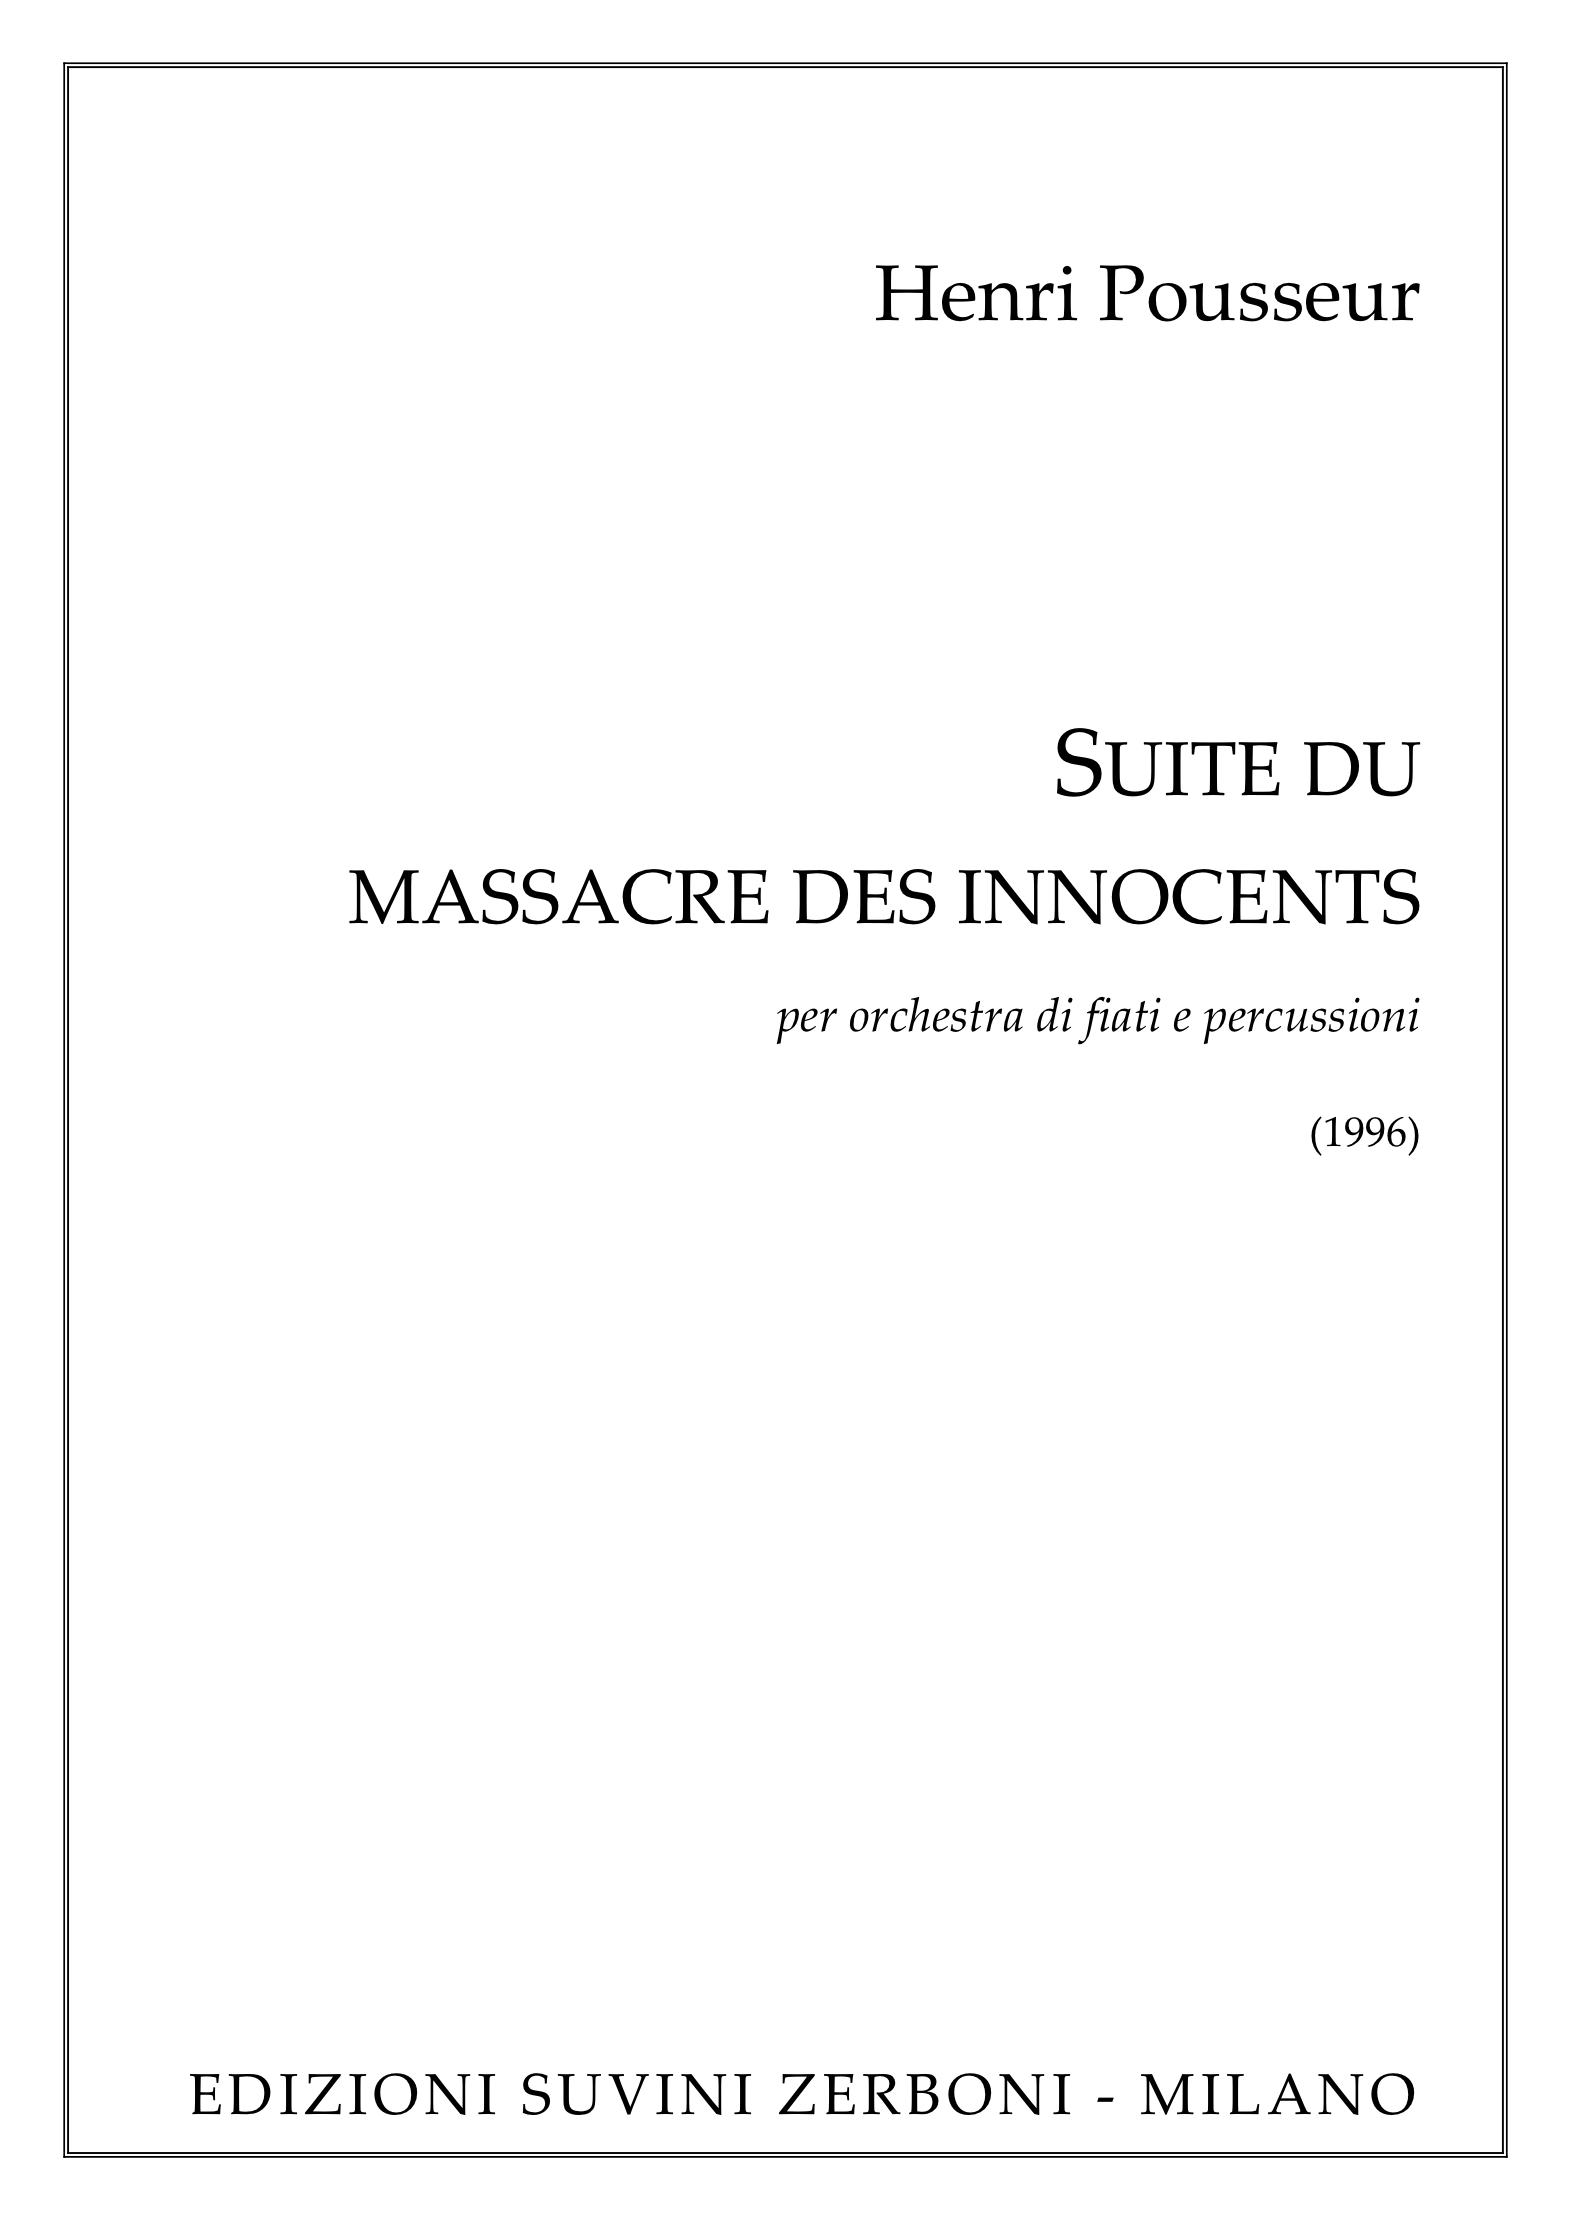 Suite du massacre_Pousseur 1